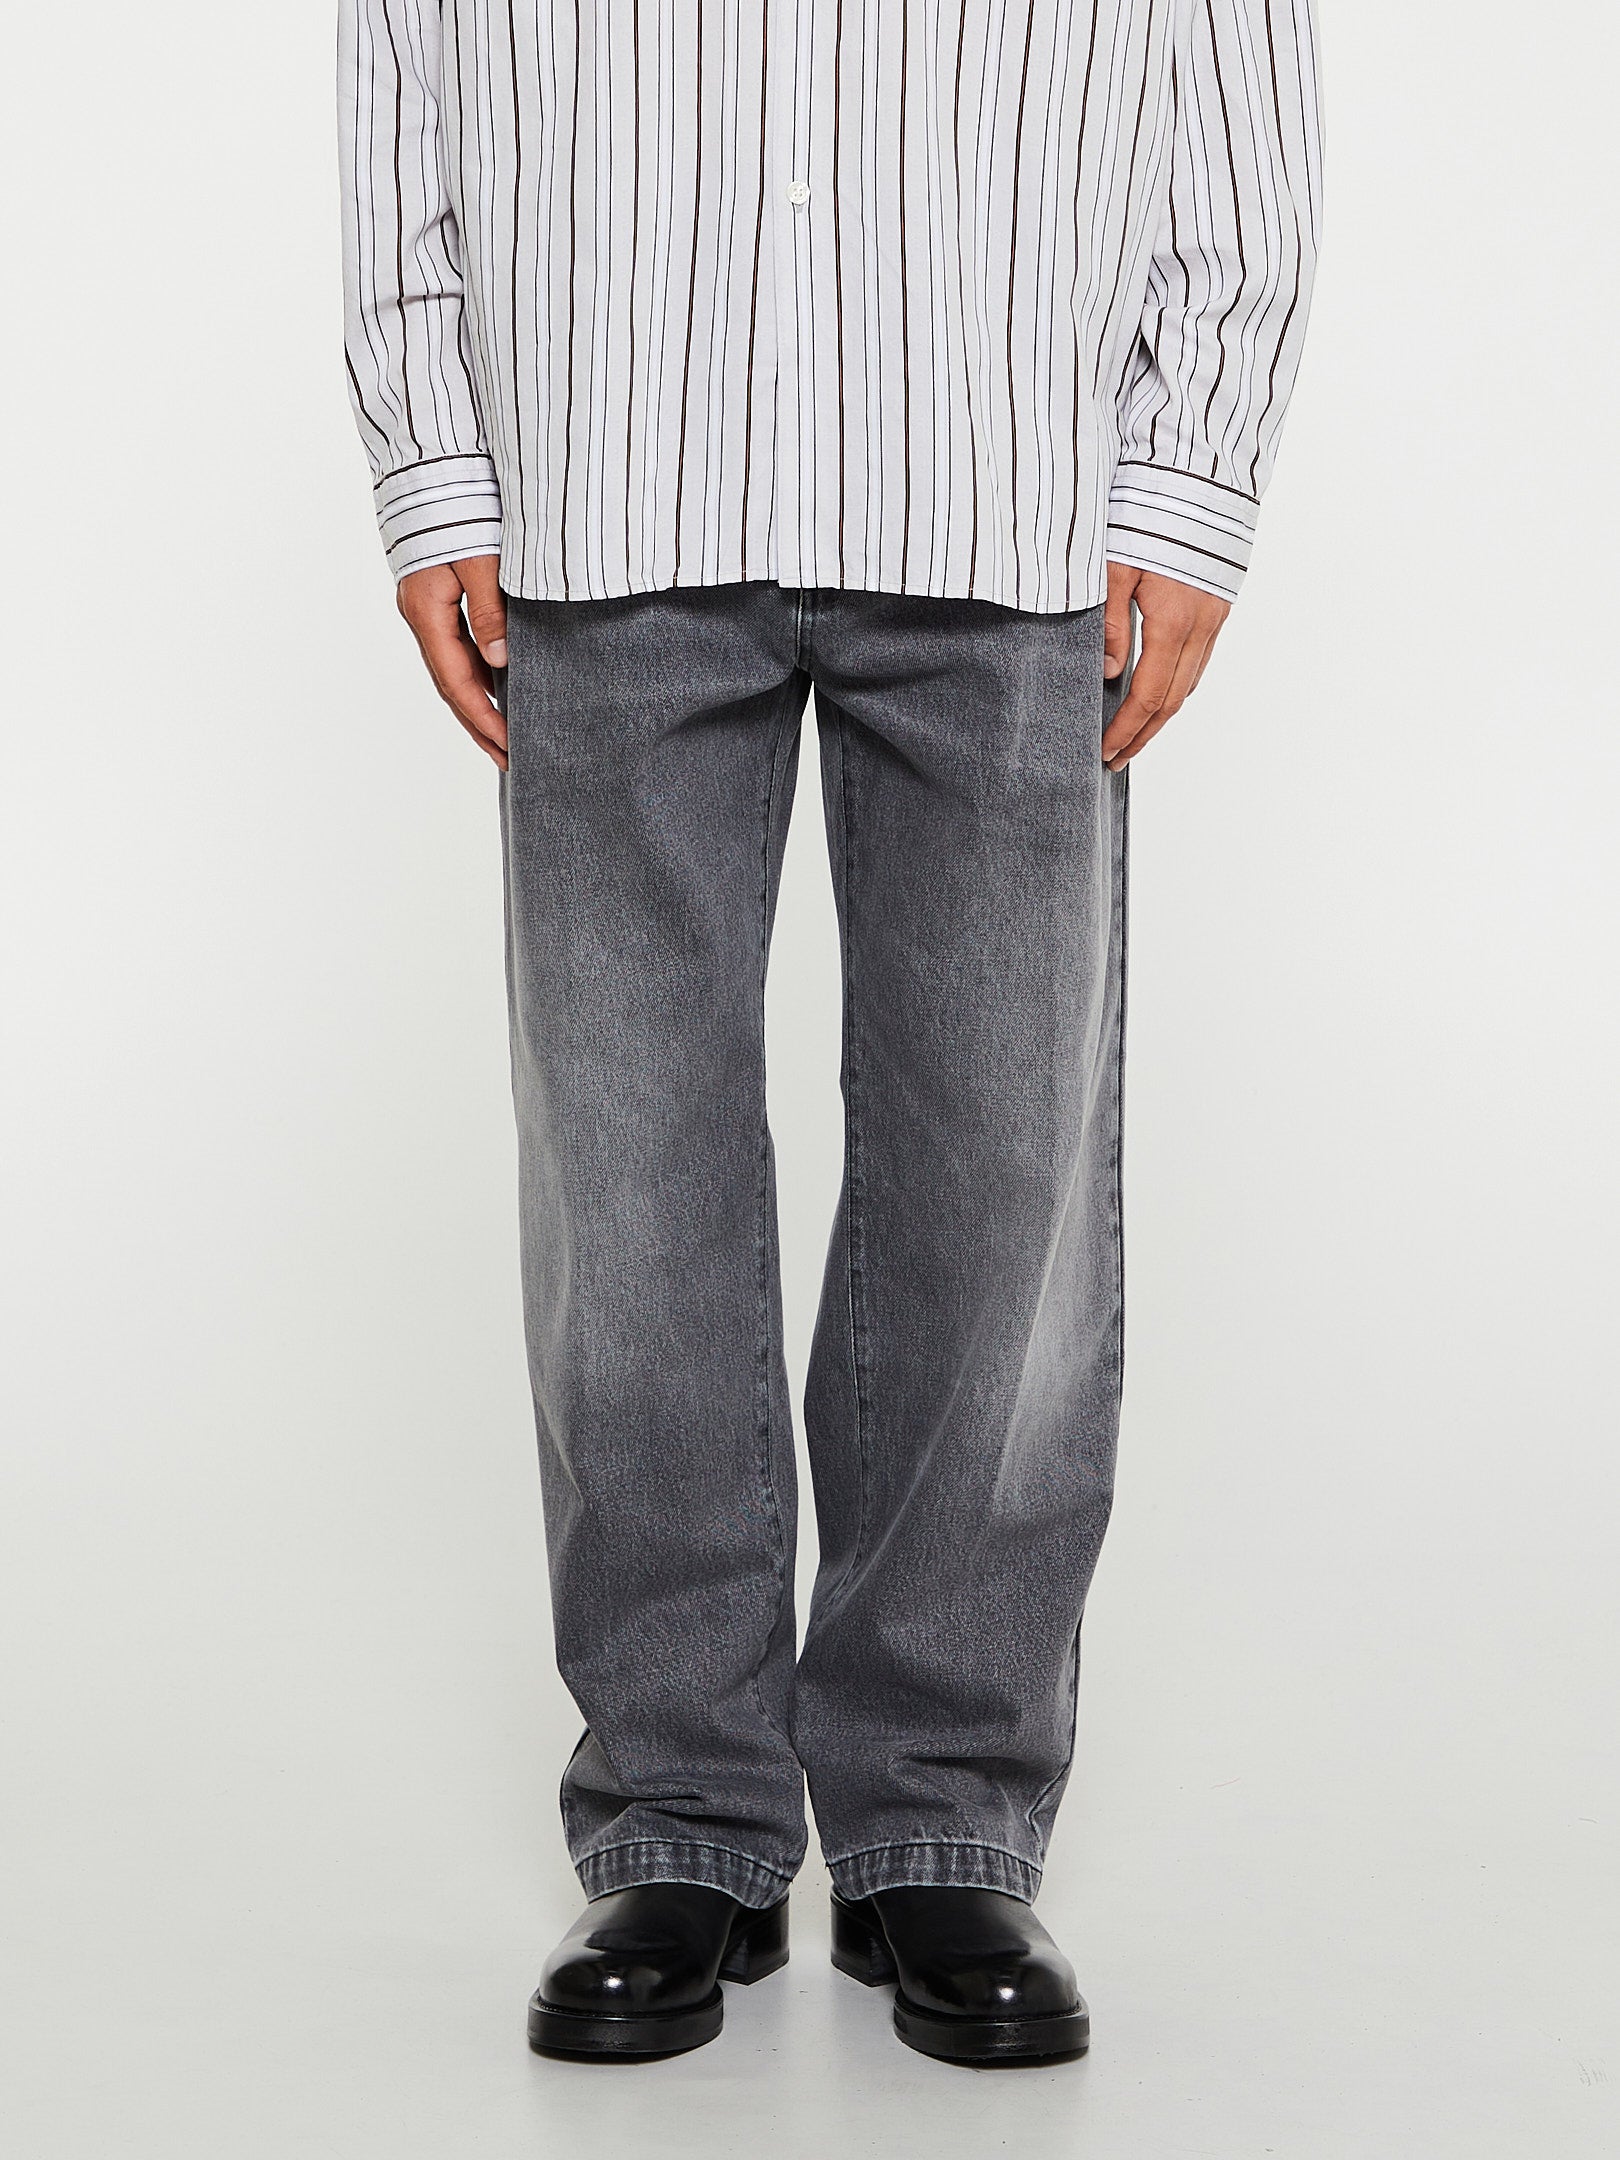 mf pen - Big Jeans in Grey